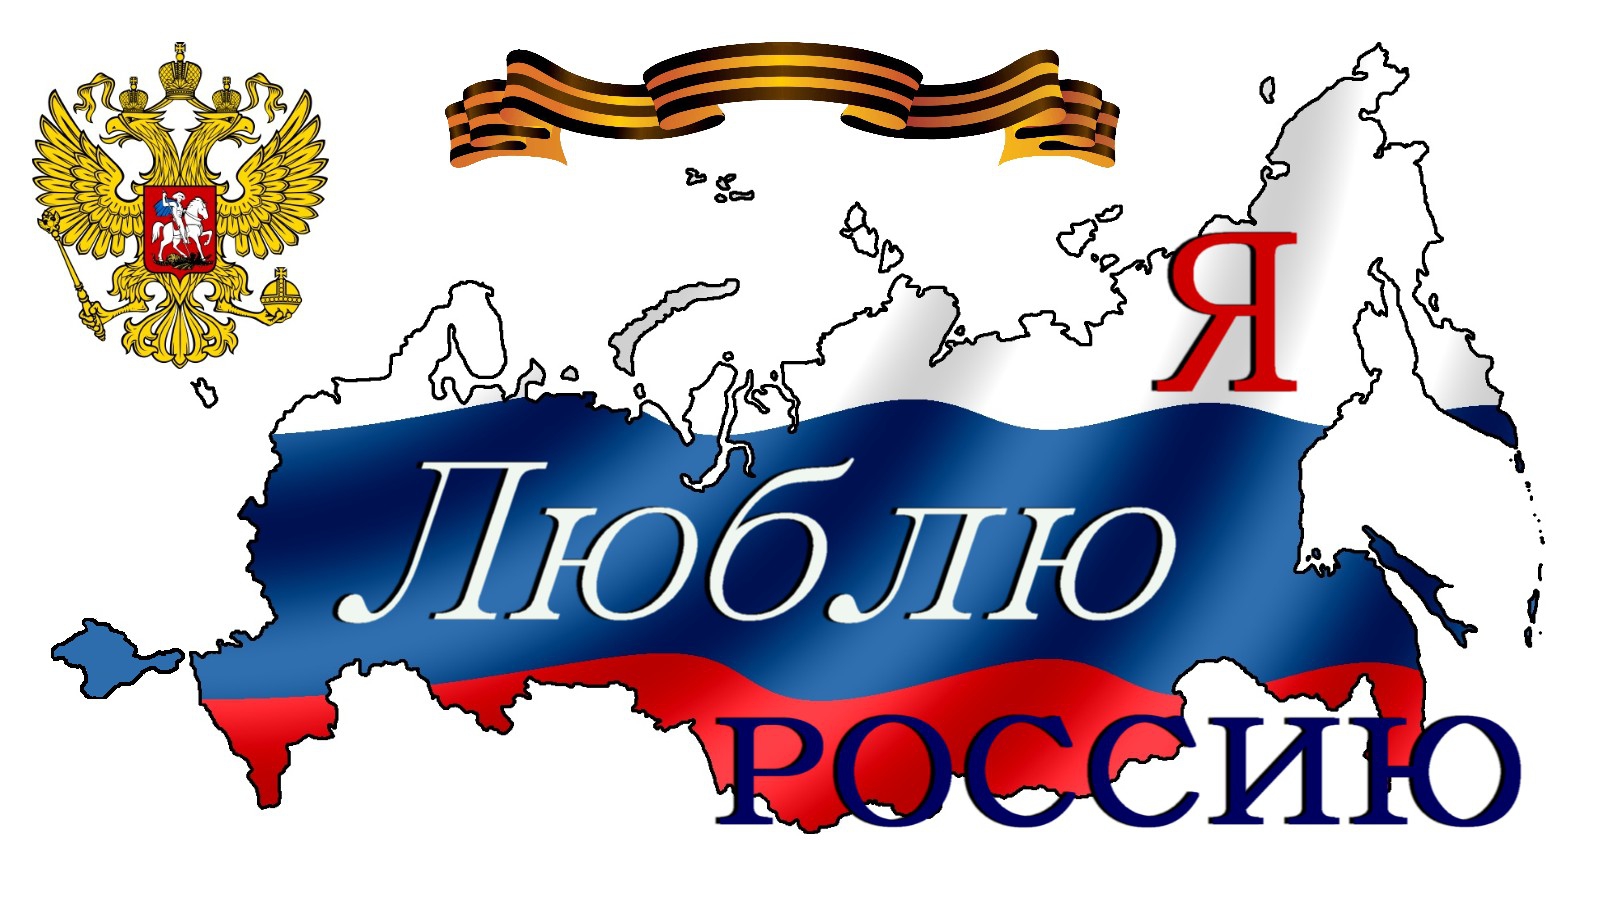 Россия страна возможностей мои горизонты. Я люблю Россию. Баннер я люблю Россию. Плакат я люблю Россию. Надпись я люблю Россию.